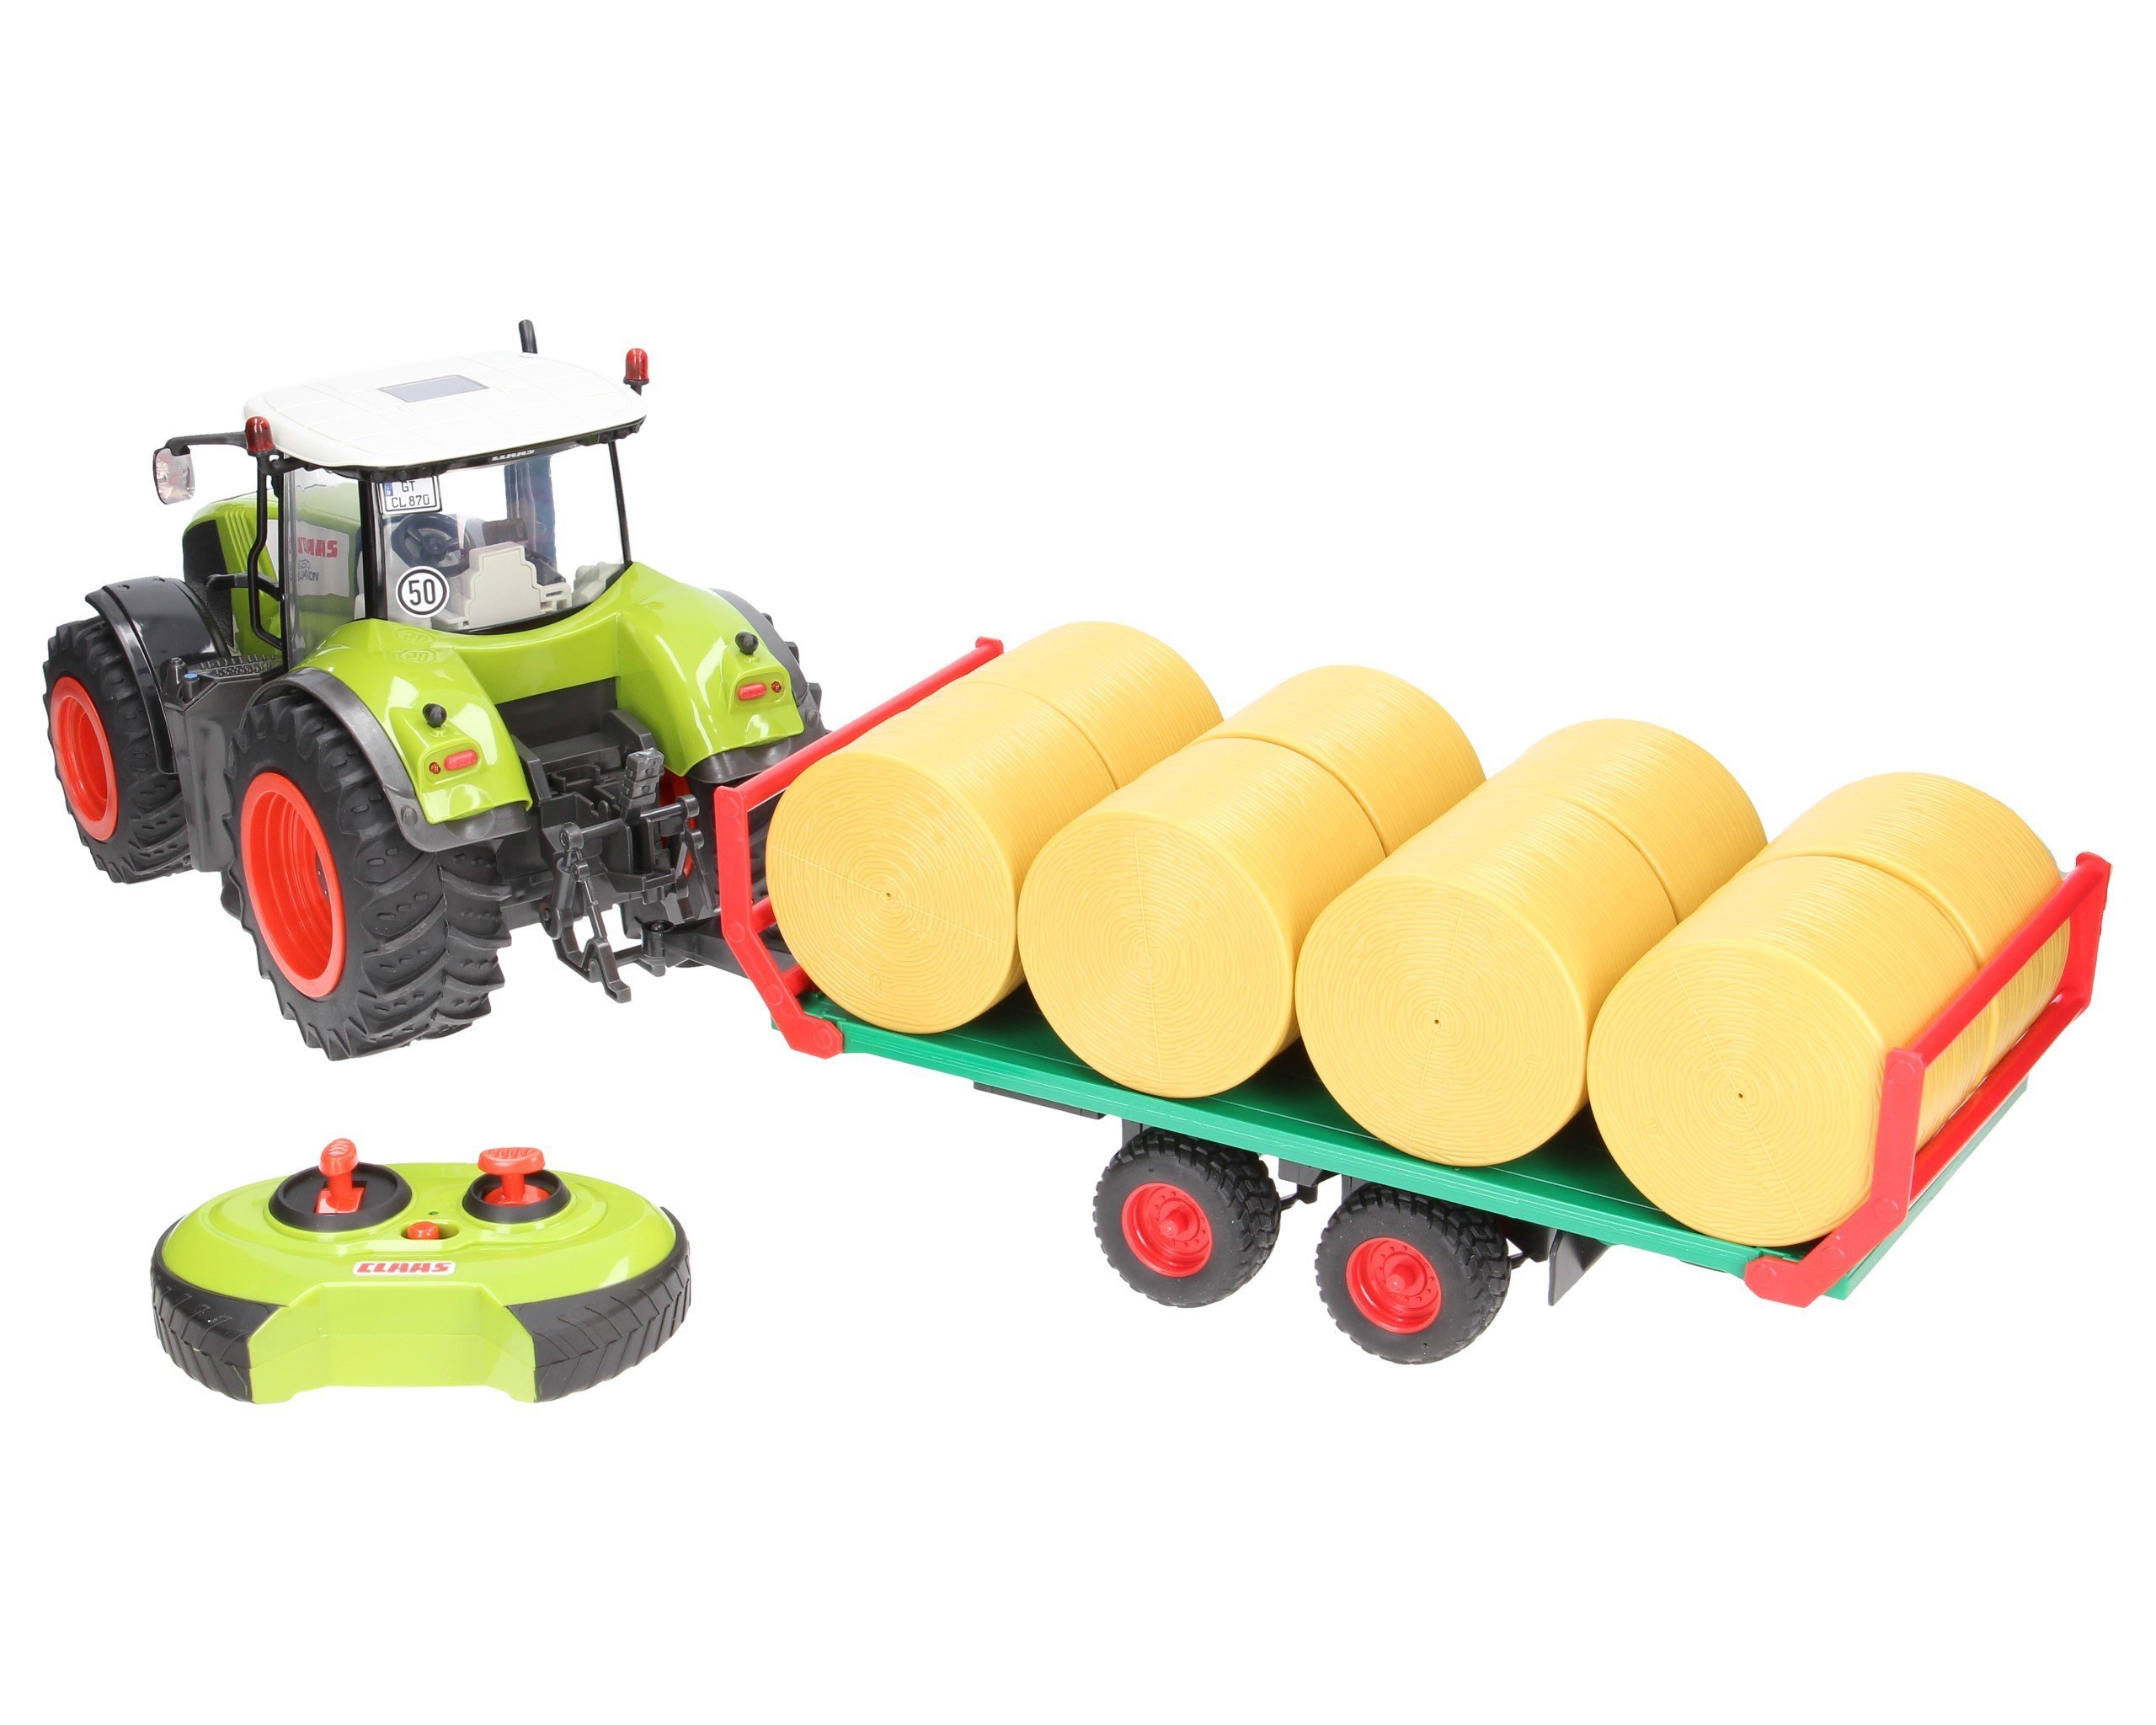 Zestaw traktor Claas zdalnie sterowany z przyczepą do wywozu balotów Bruder  